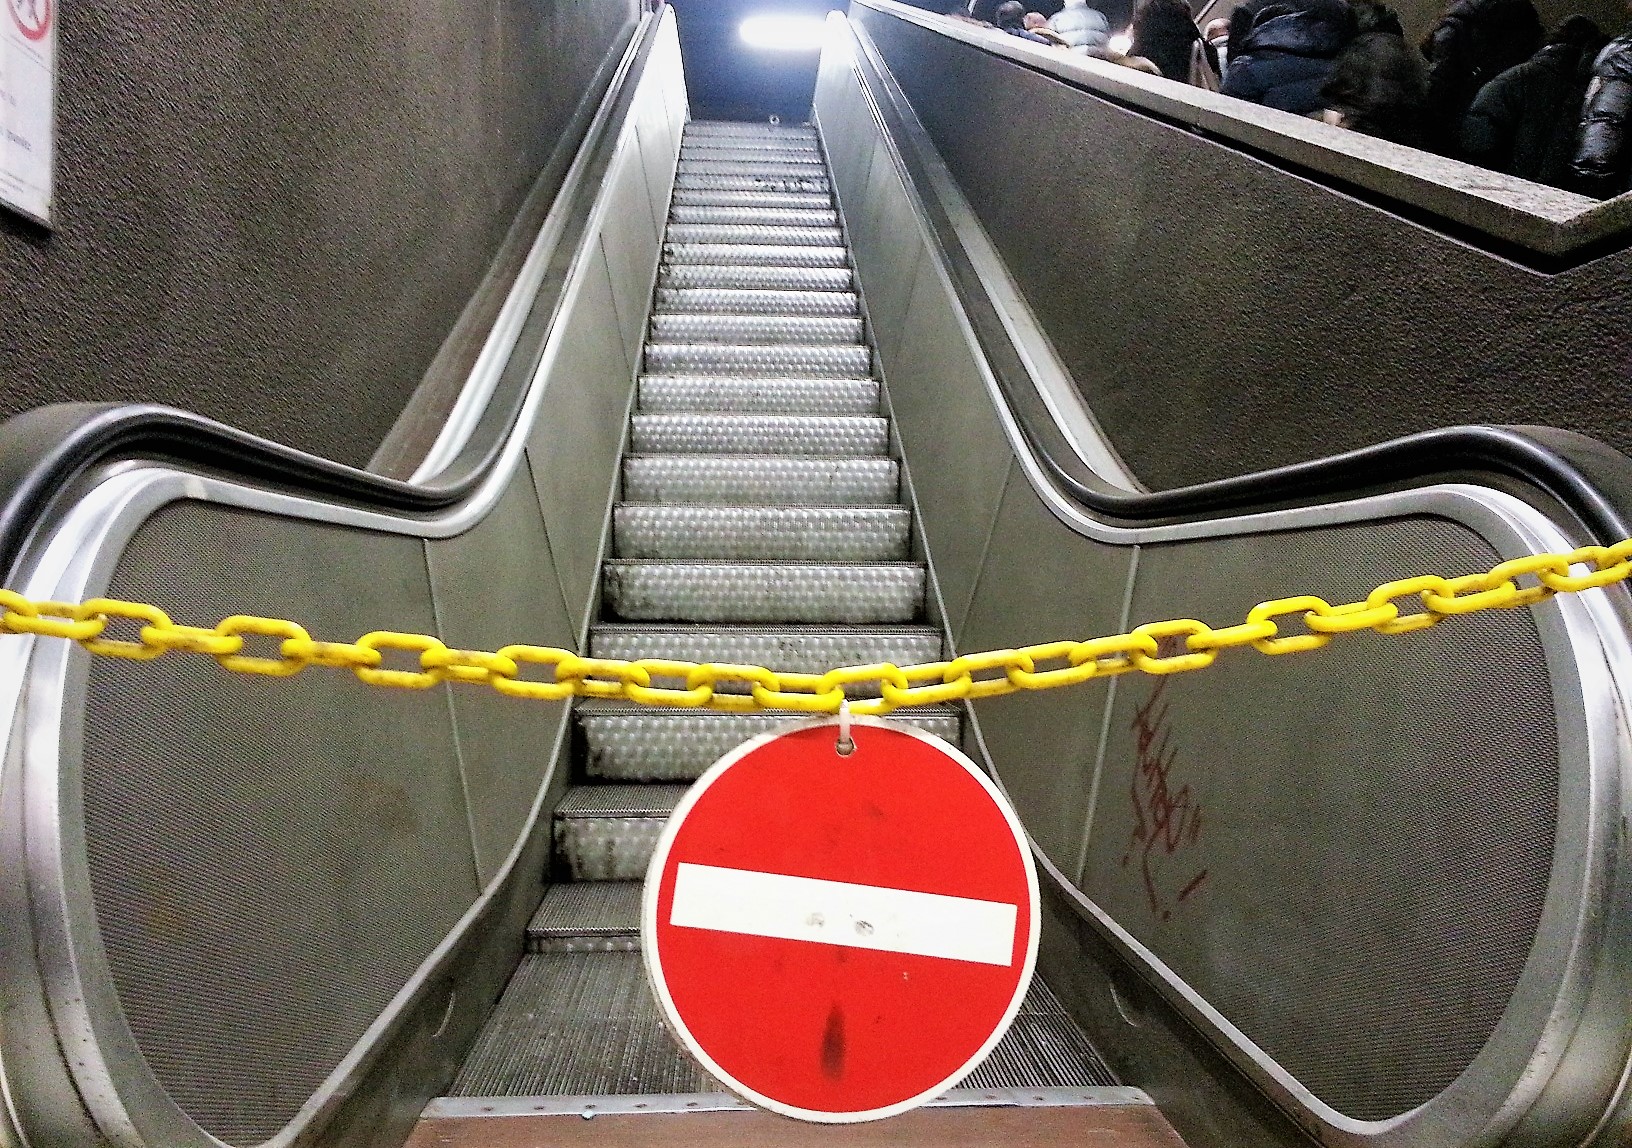 Cade dalle scale mobili della metro, morto 29enne a Torino